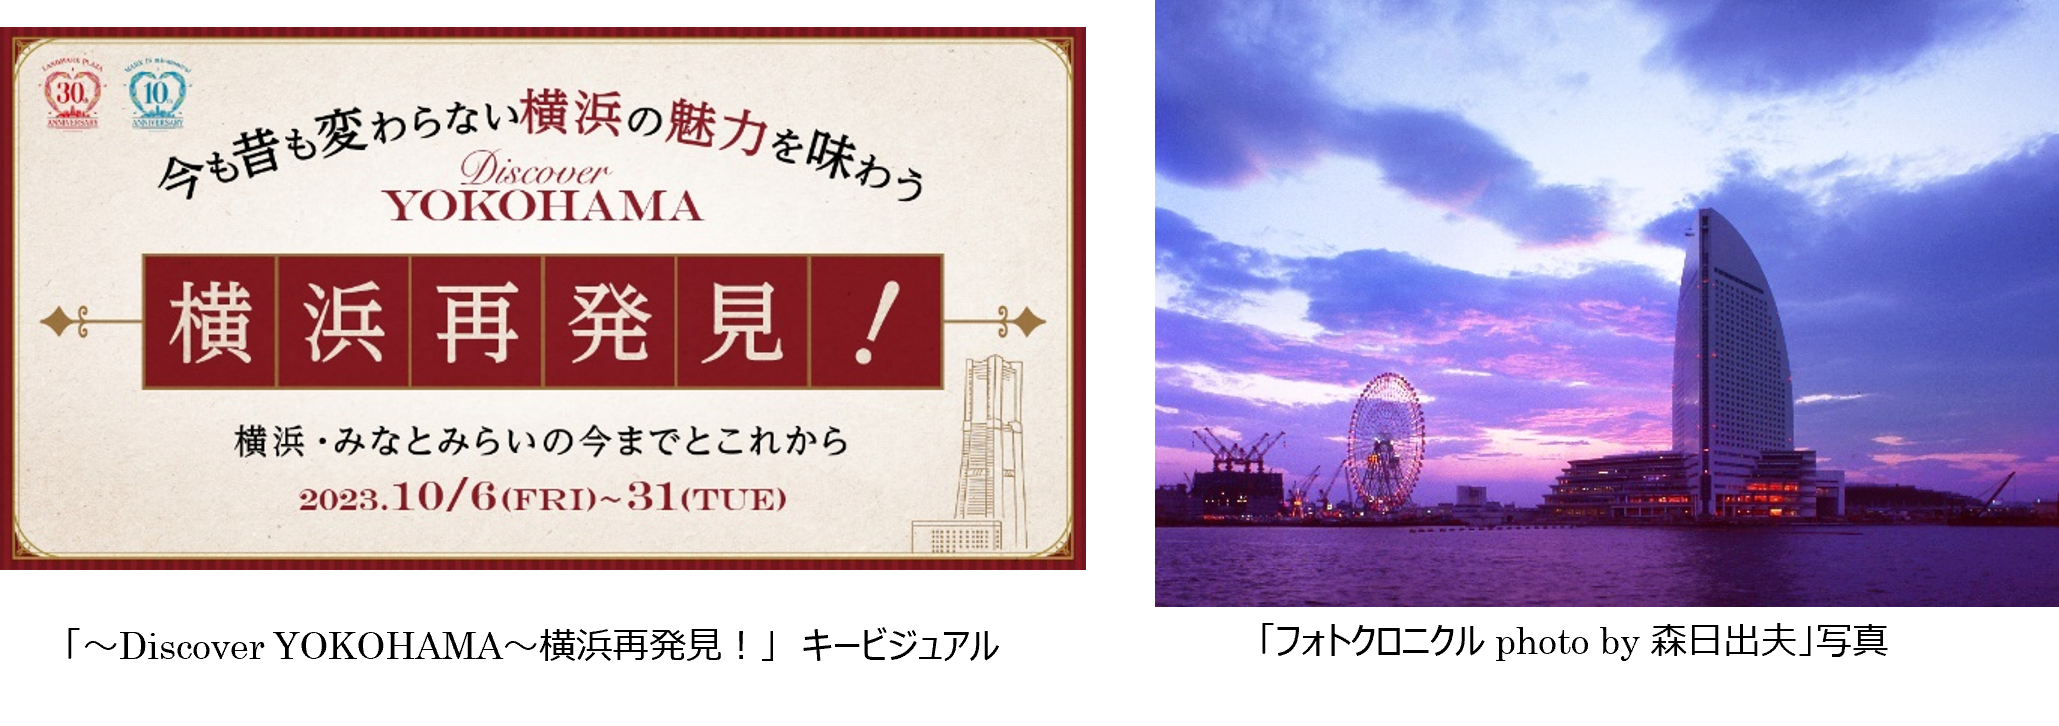 アニバーサリーイヤーを記念し、今も昔も変わらない特別な“横浜の魅力”を味わう「～Discover YOKOHAMA～横浜再発見！」キャンペーンを開催のサブ画像1